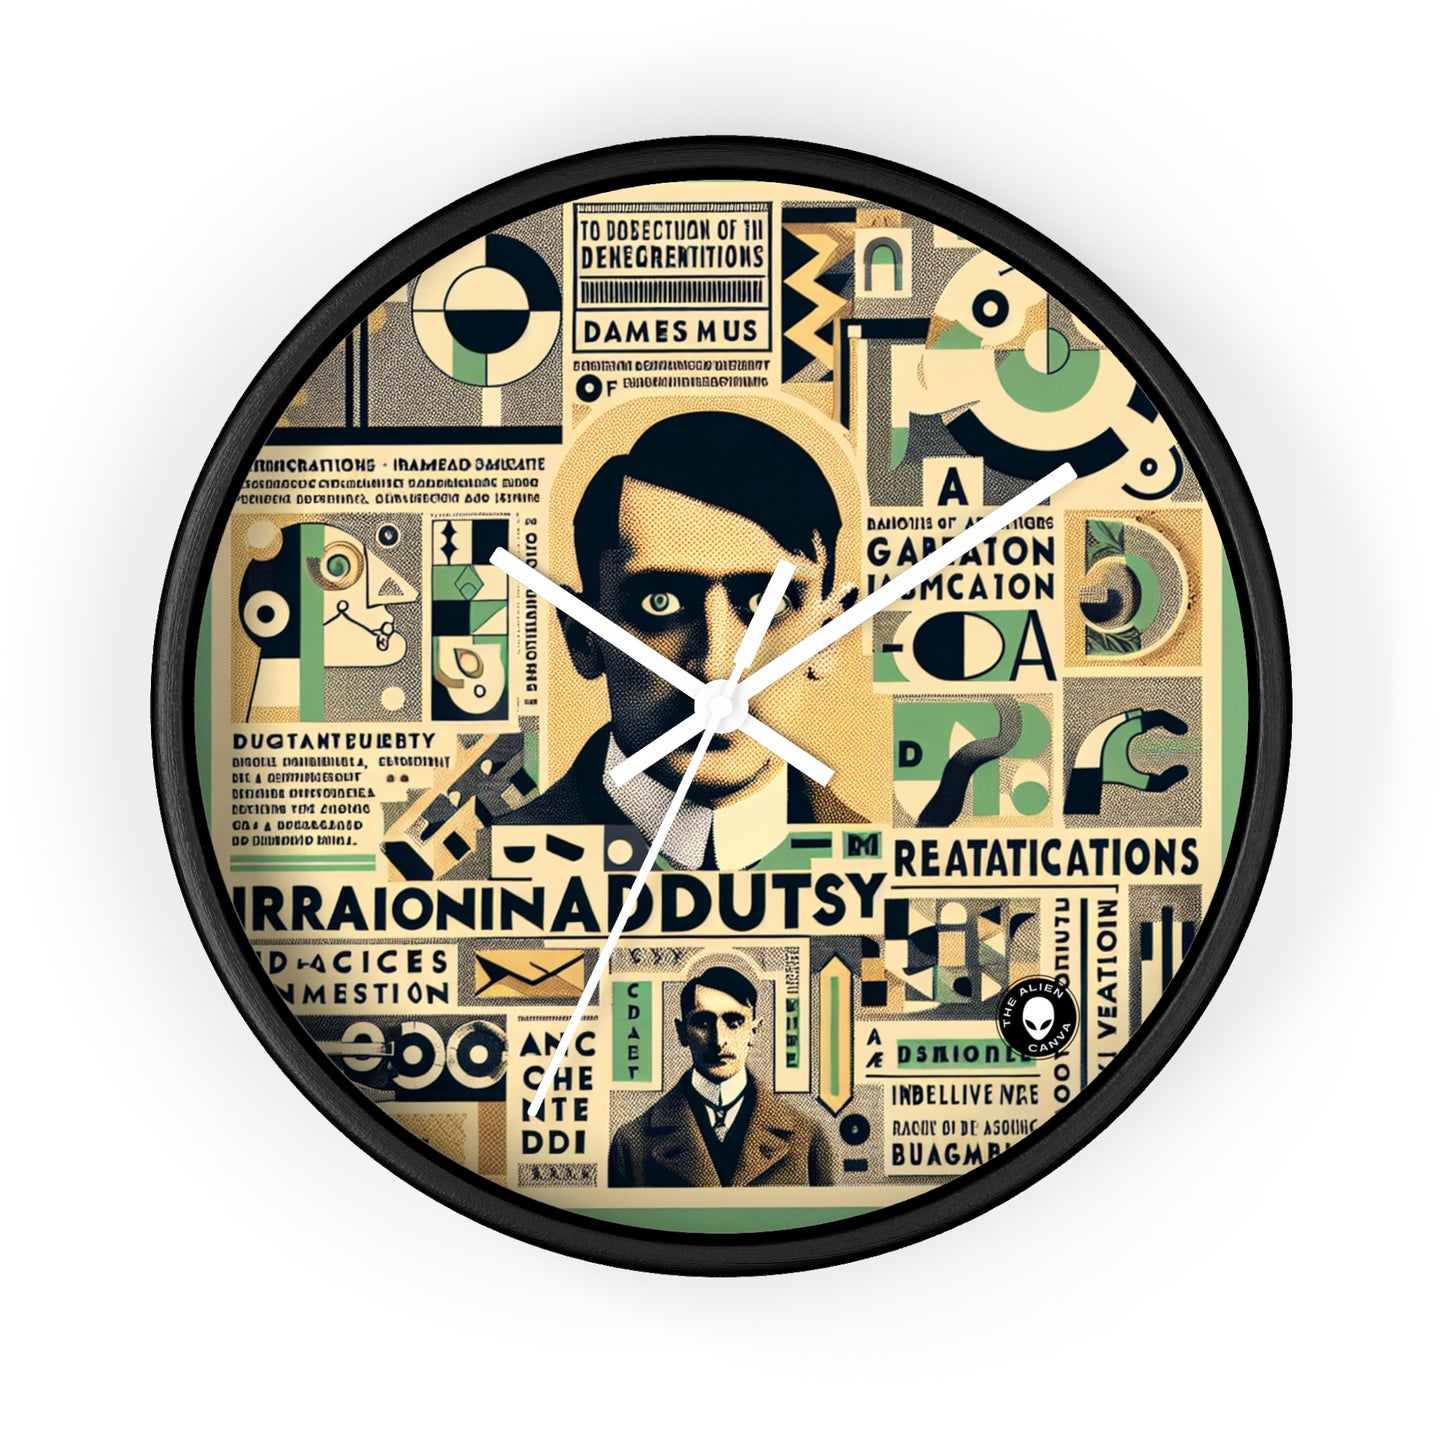 "Cacophonie de la folie banale : un collage dadaïste" - L'horloge murale extraterrestre Dadaïsme